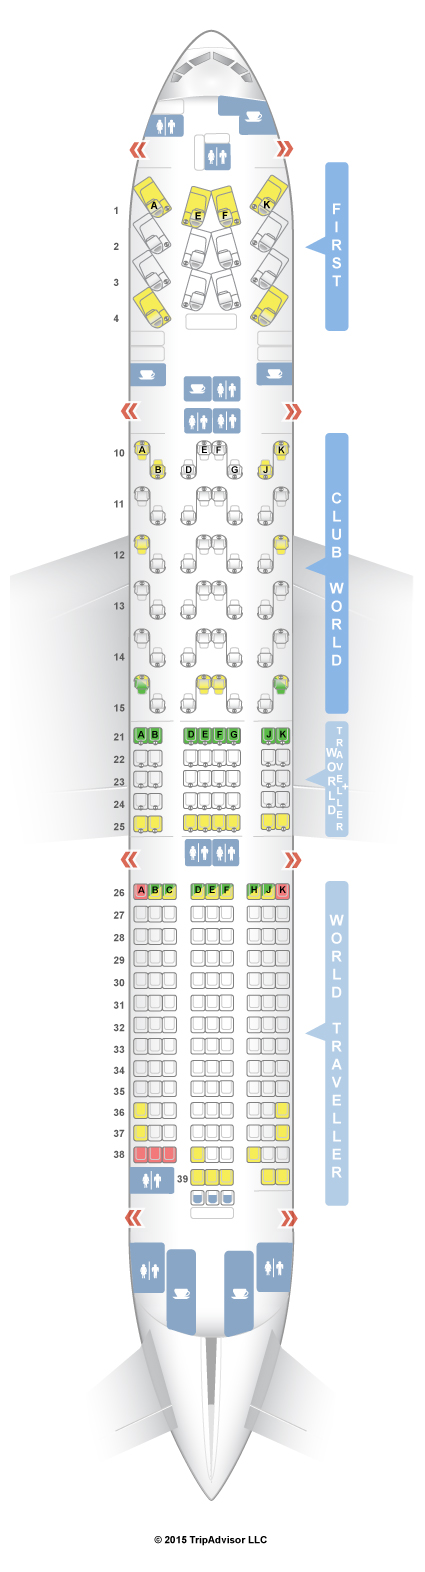 Seatguru Seat Map British Airways Boeing 777 200 772 Four Class